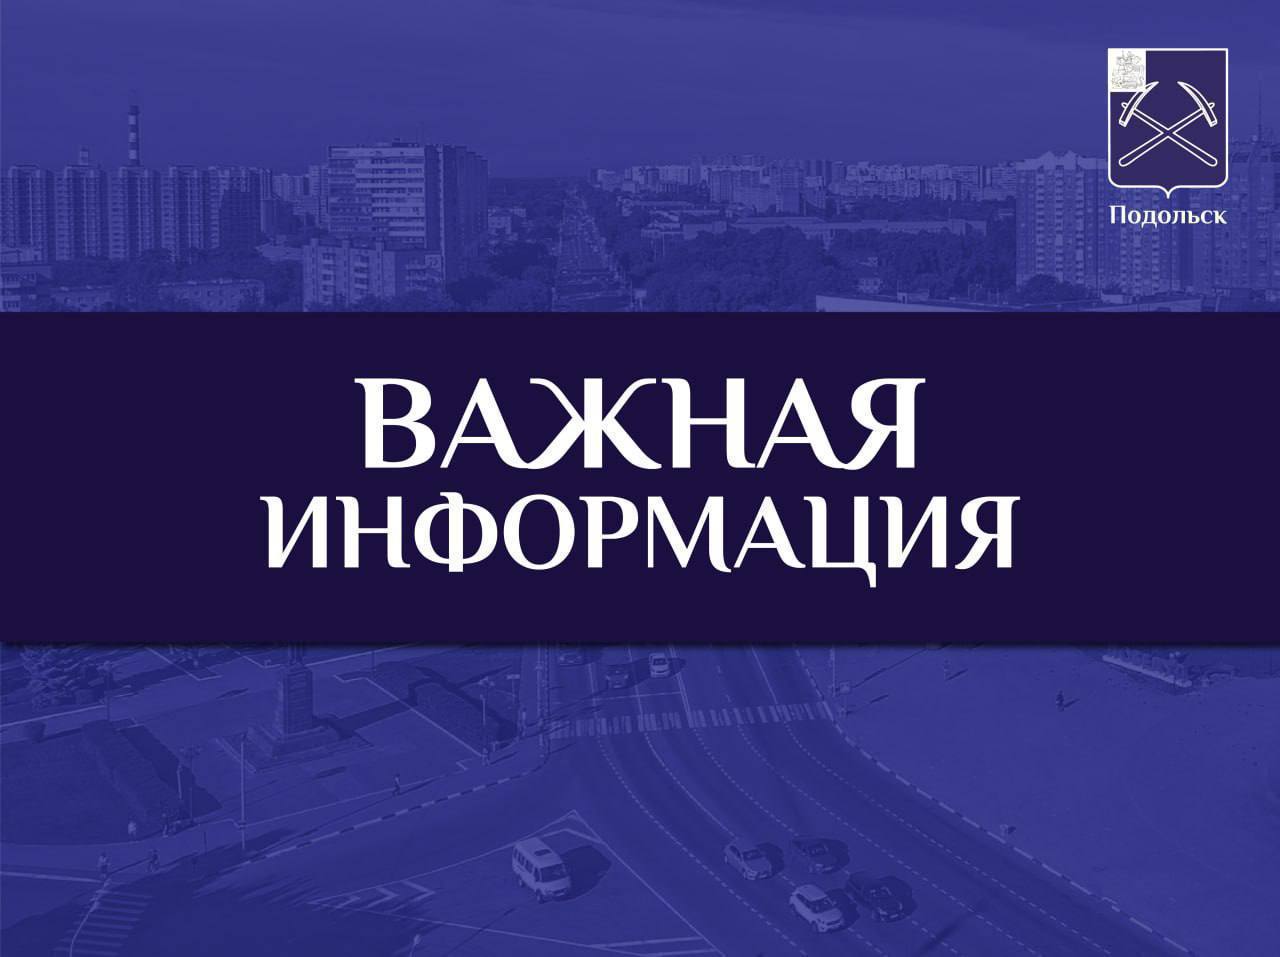 Общежития для рабочих "УК Подольск" не будут размещать в помещениях рядом с МКД